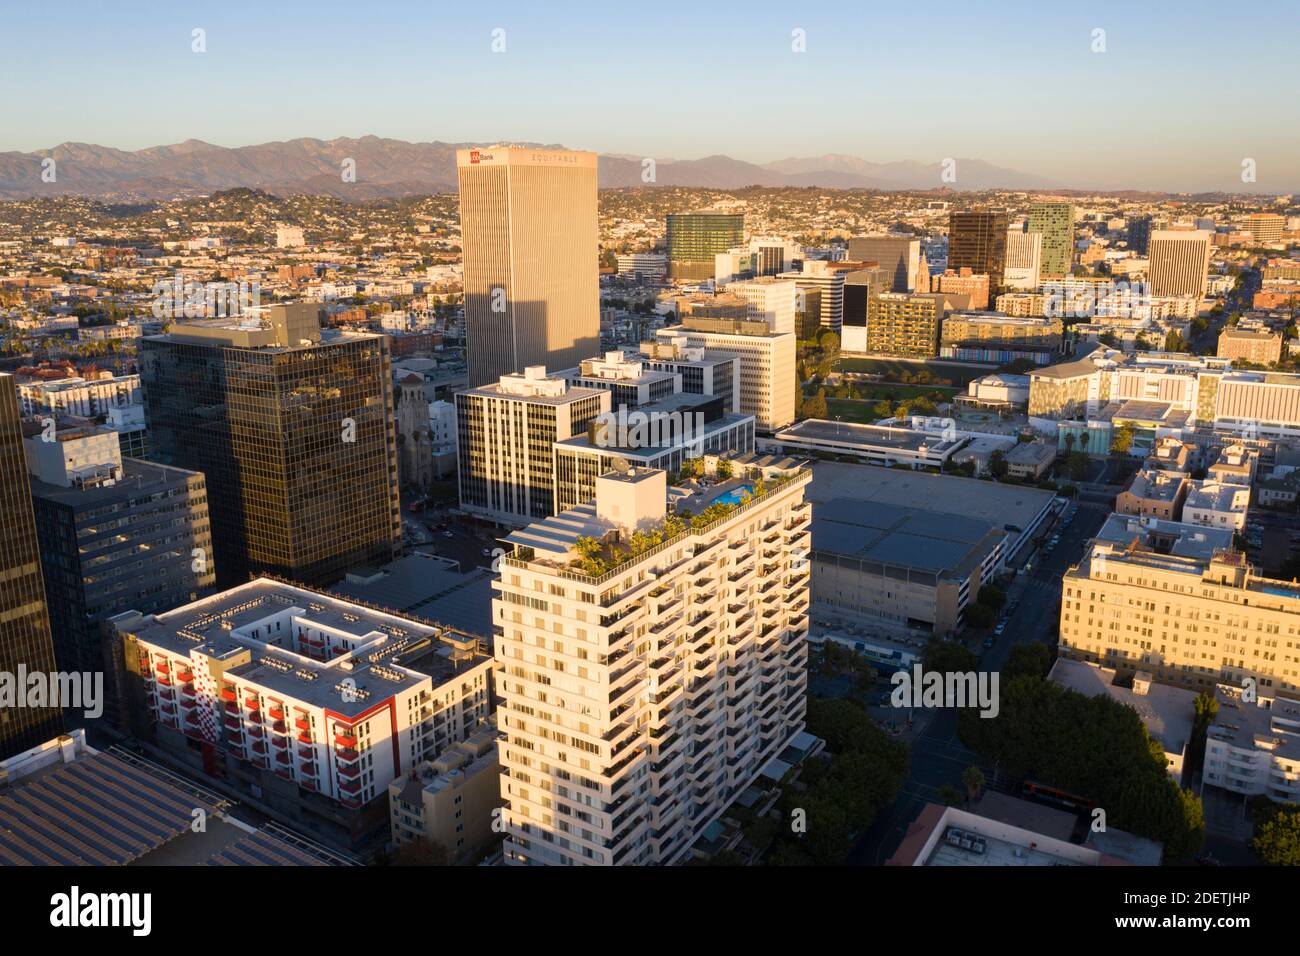 Vista aérea sobre Koreatown y el denso corredor urbano de Wilshire Boulevard en el centro de los Ángeles, California Foto de stock